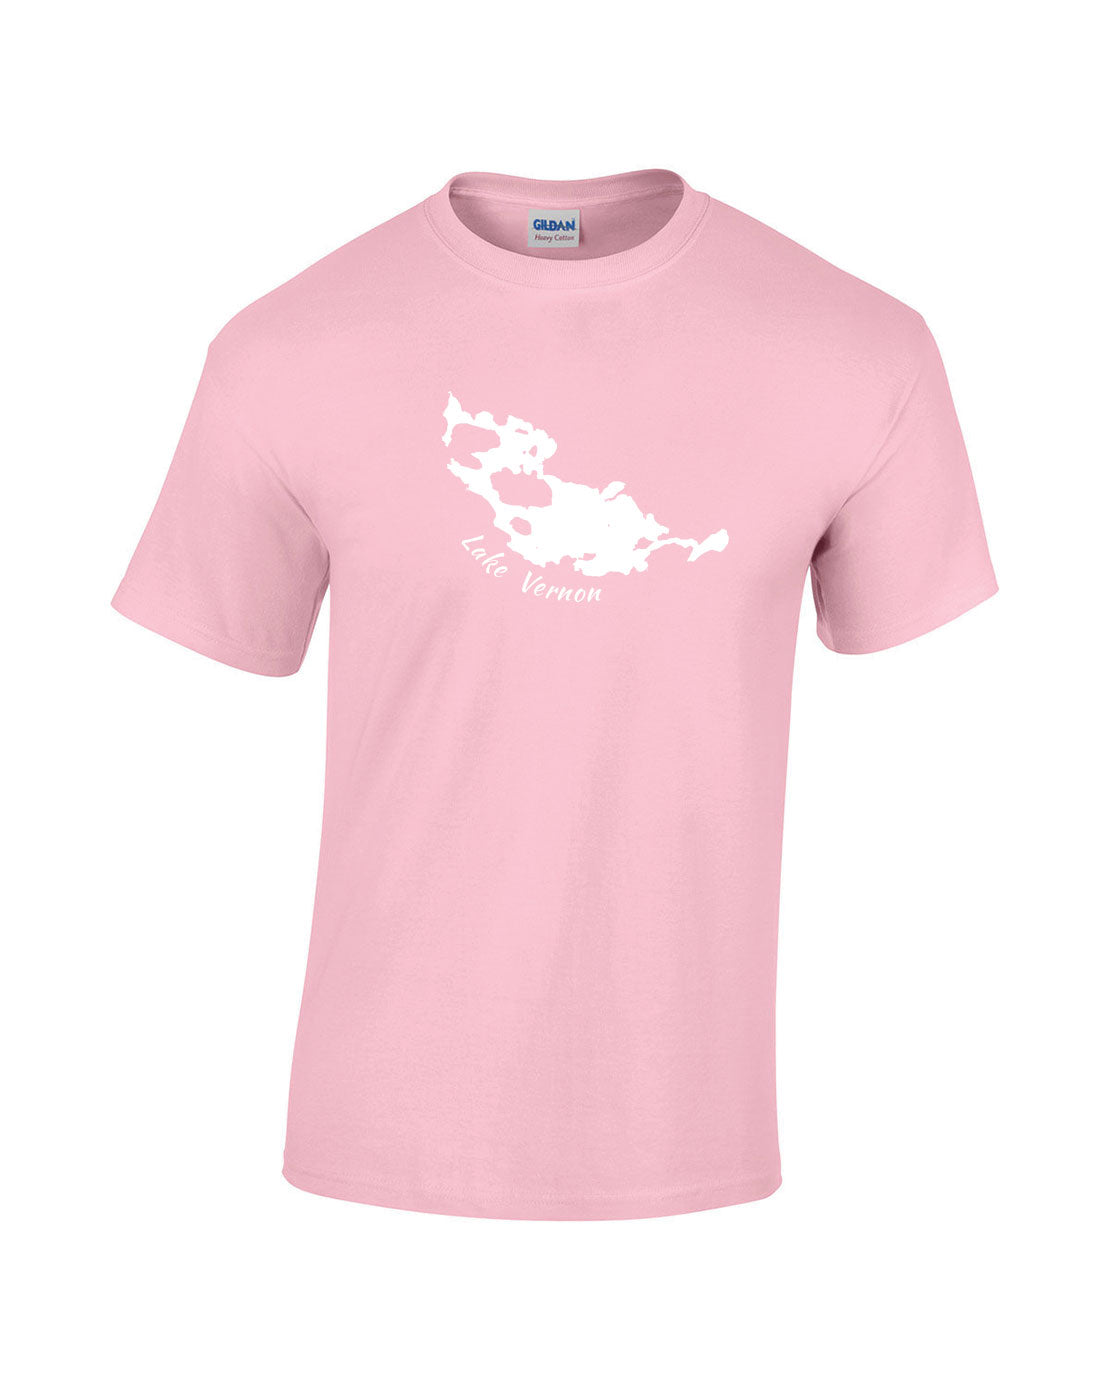 Lake Vernon T-Shirt